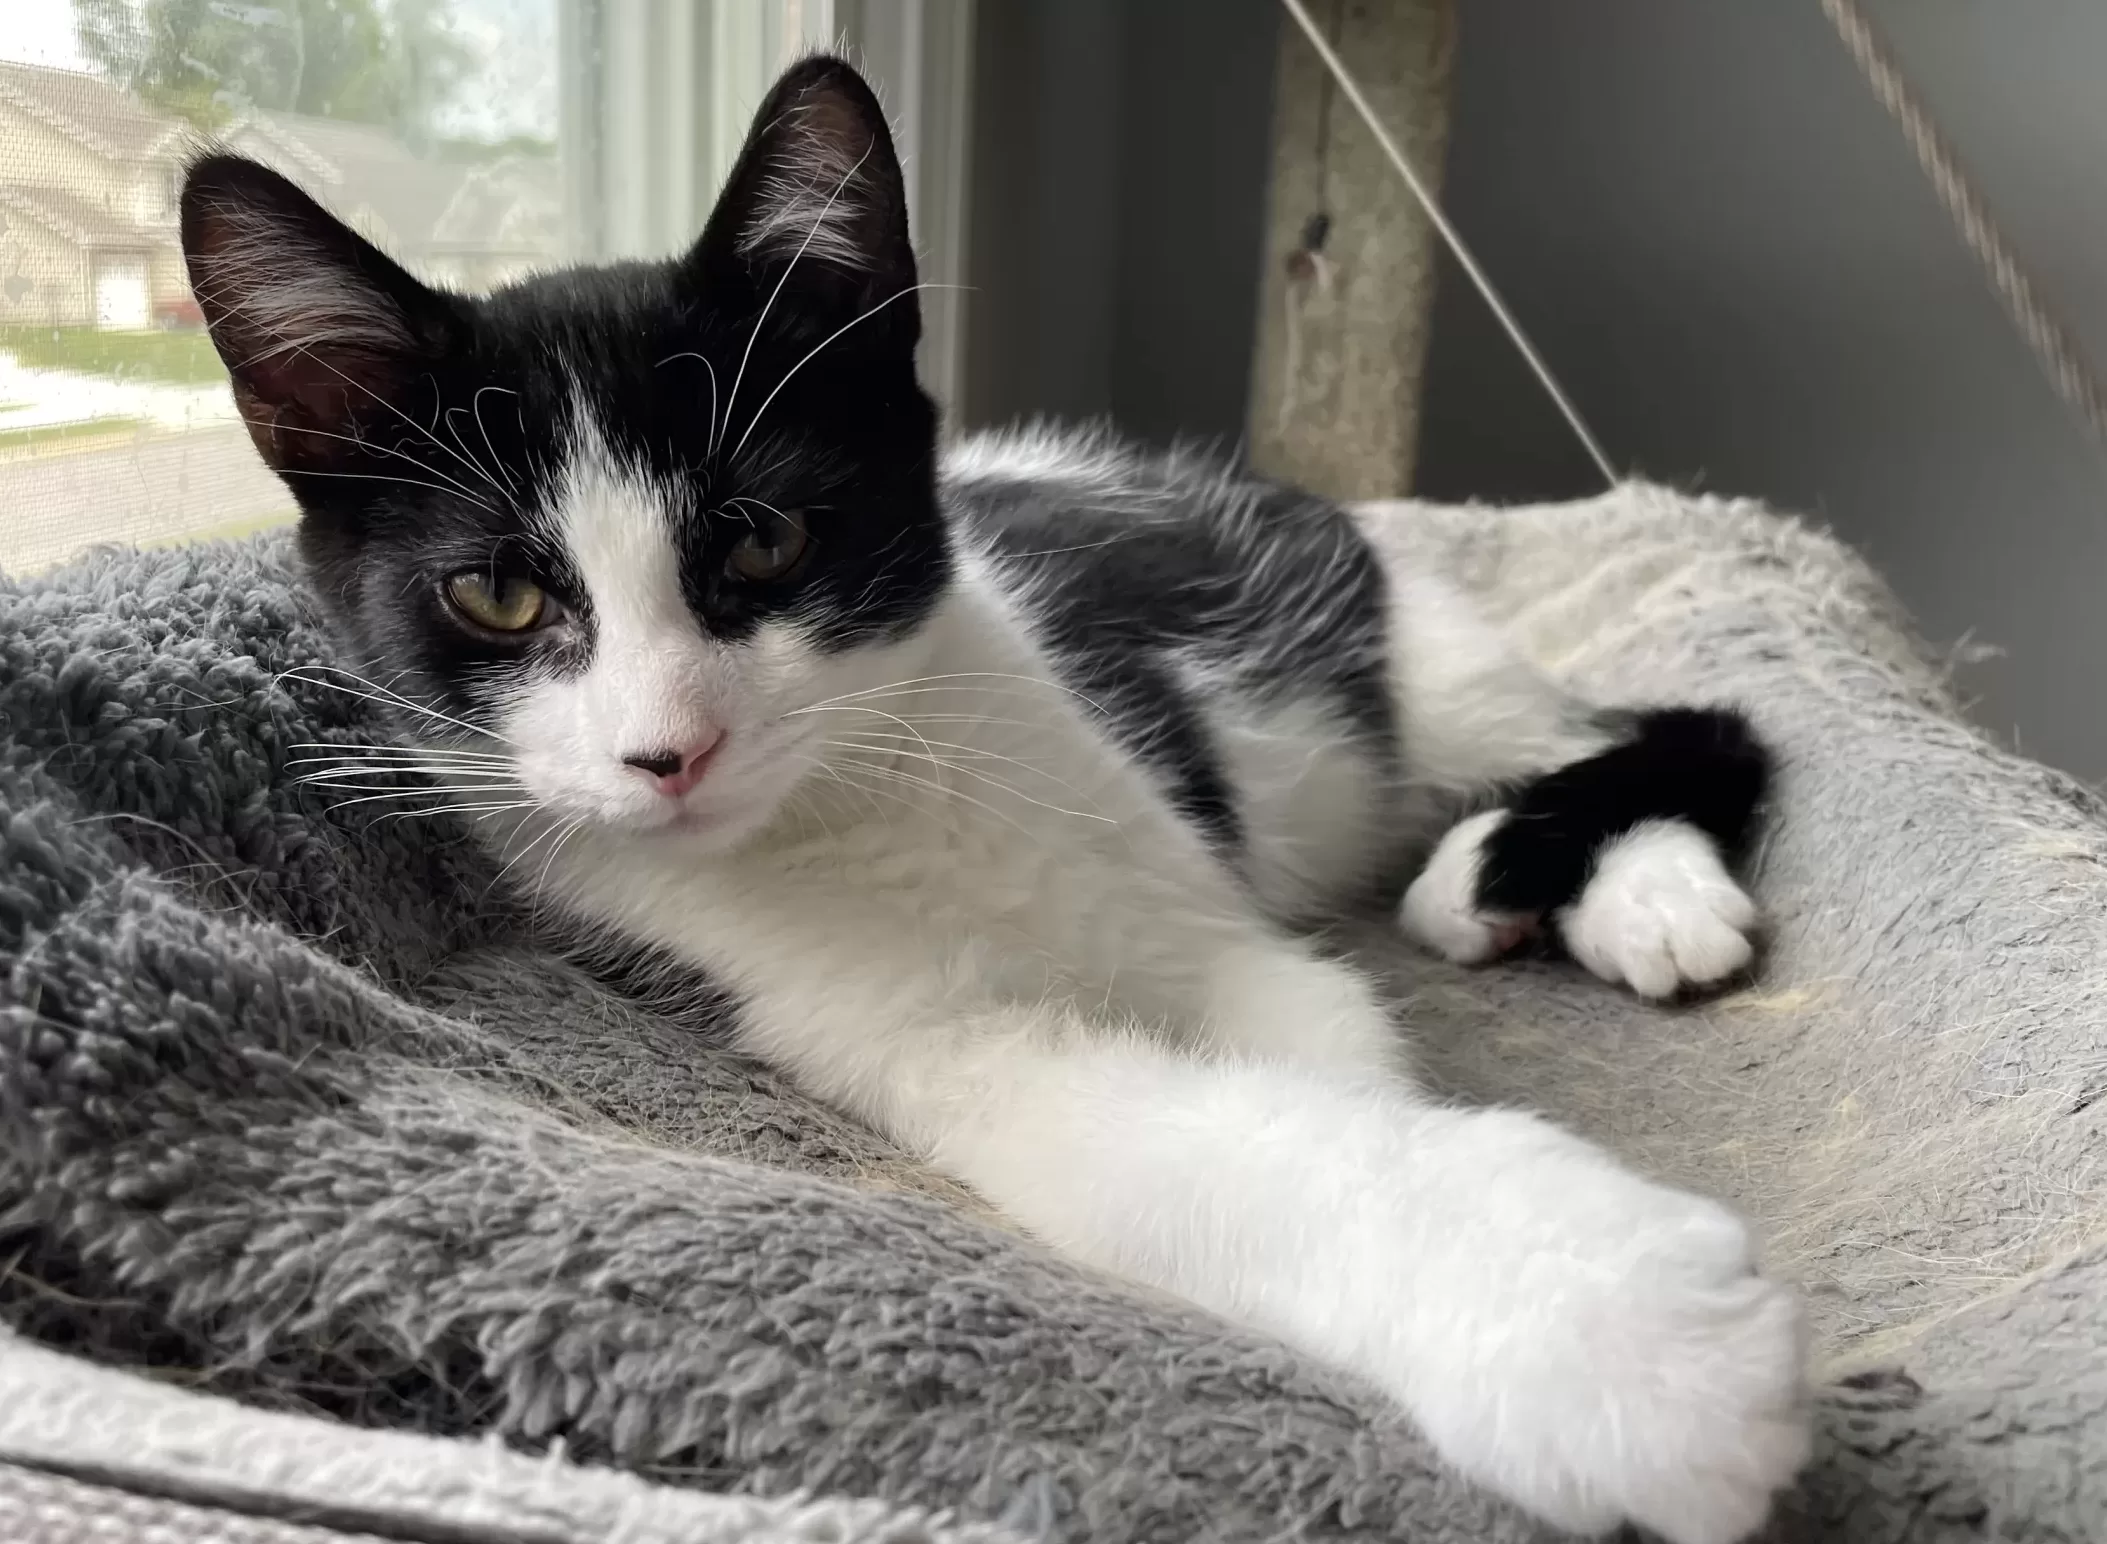 Black and white kitten for adoption